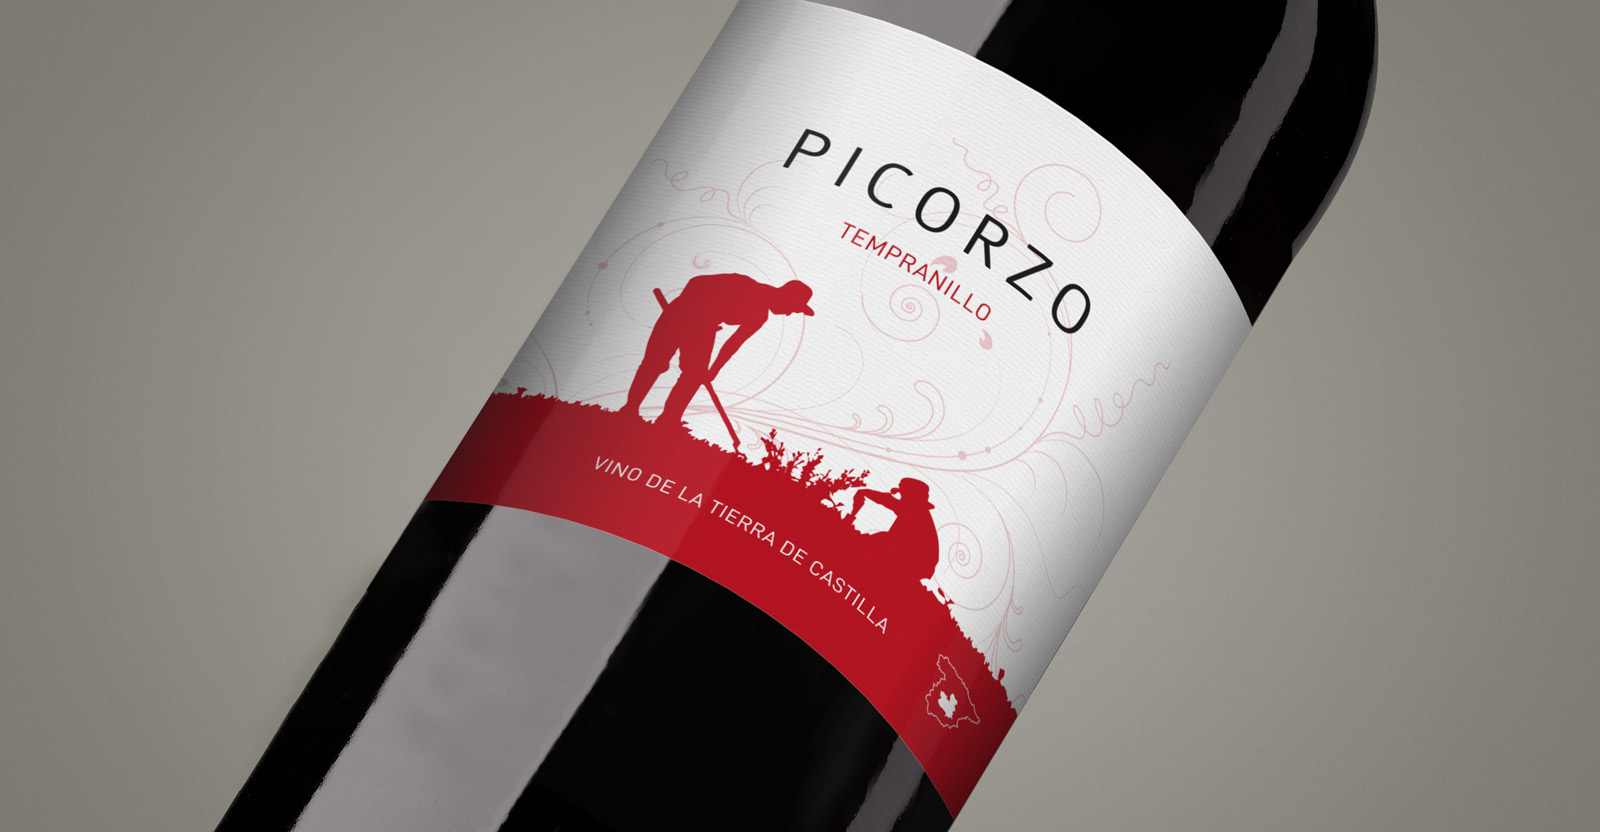 Diseño gráfico y creativo de etiquetas y packaging de vino para PICORZO de Bodegas Taray